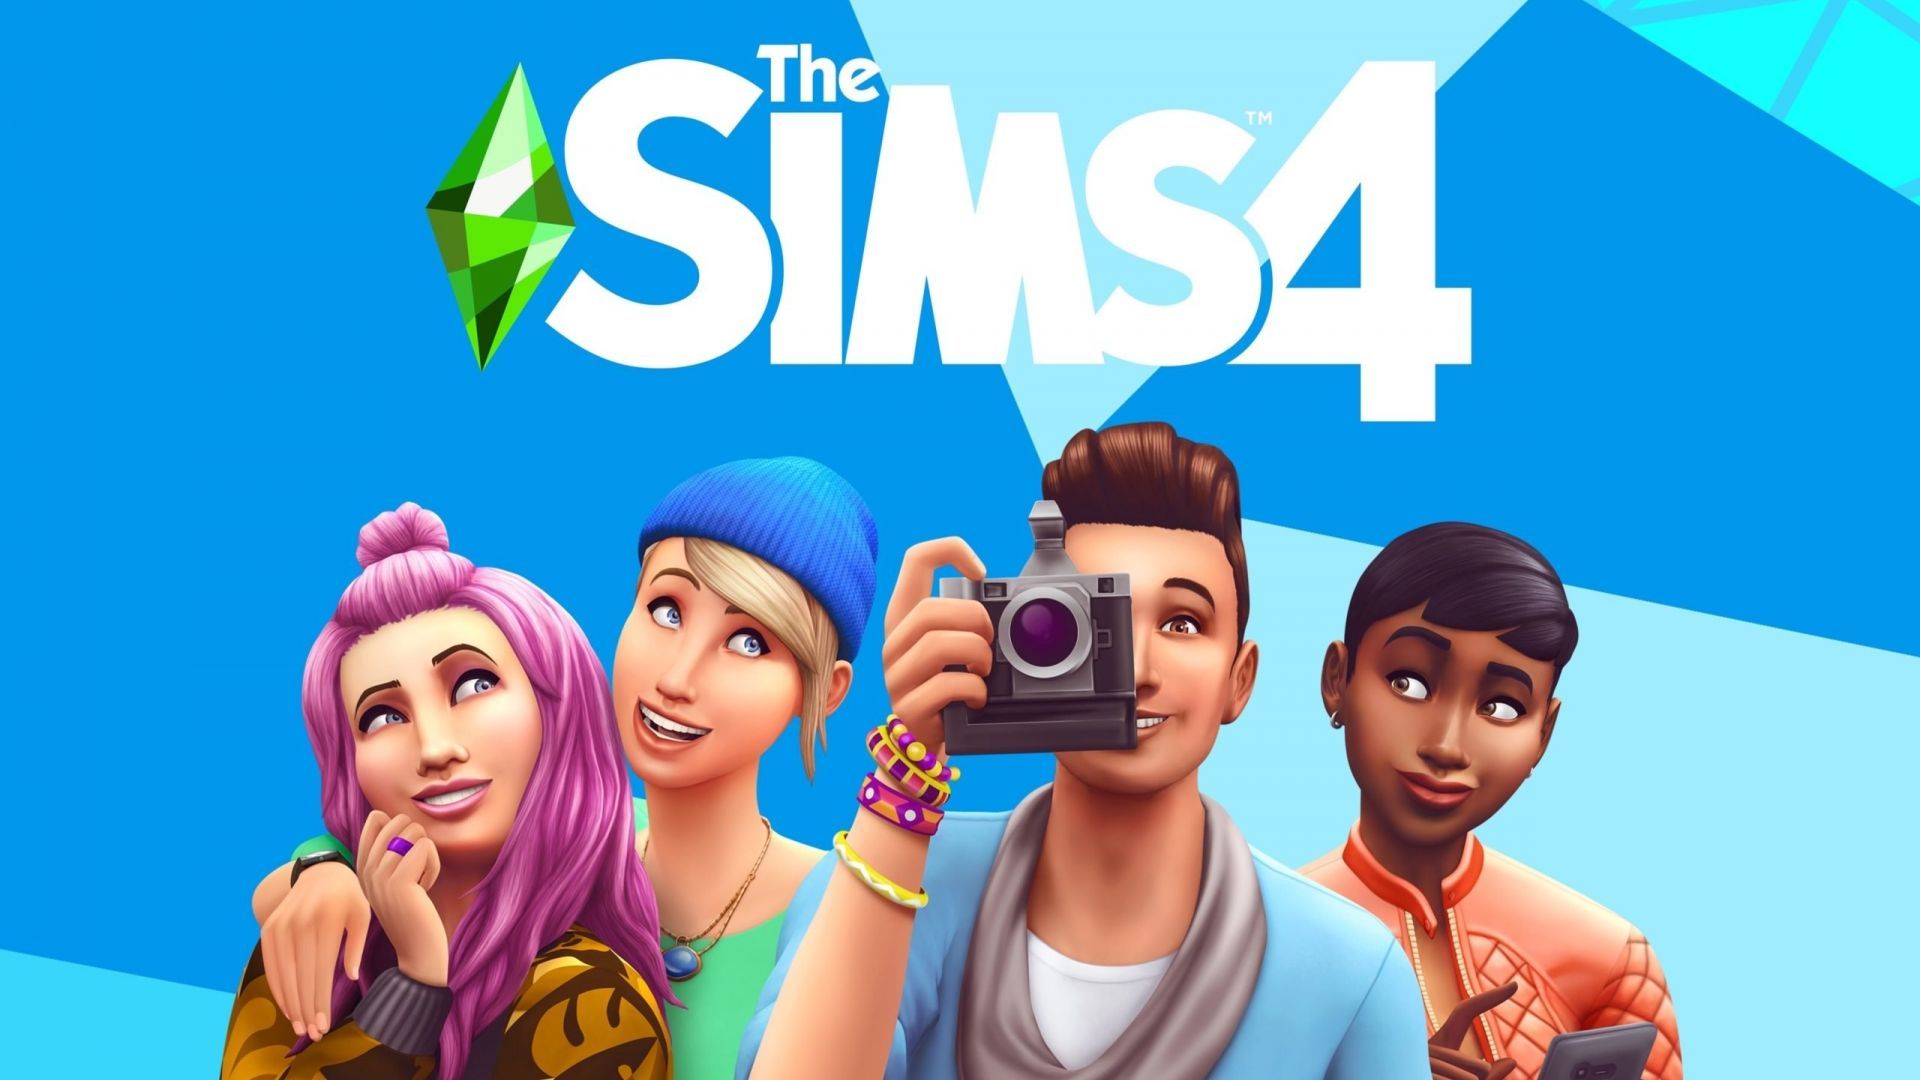 Les Sims 4 : deux gros DLC gratuits à récupérer, mais faites très vite